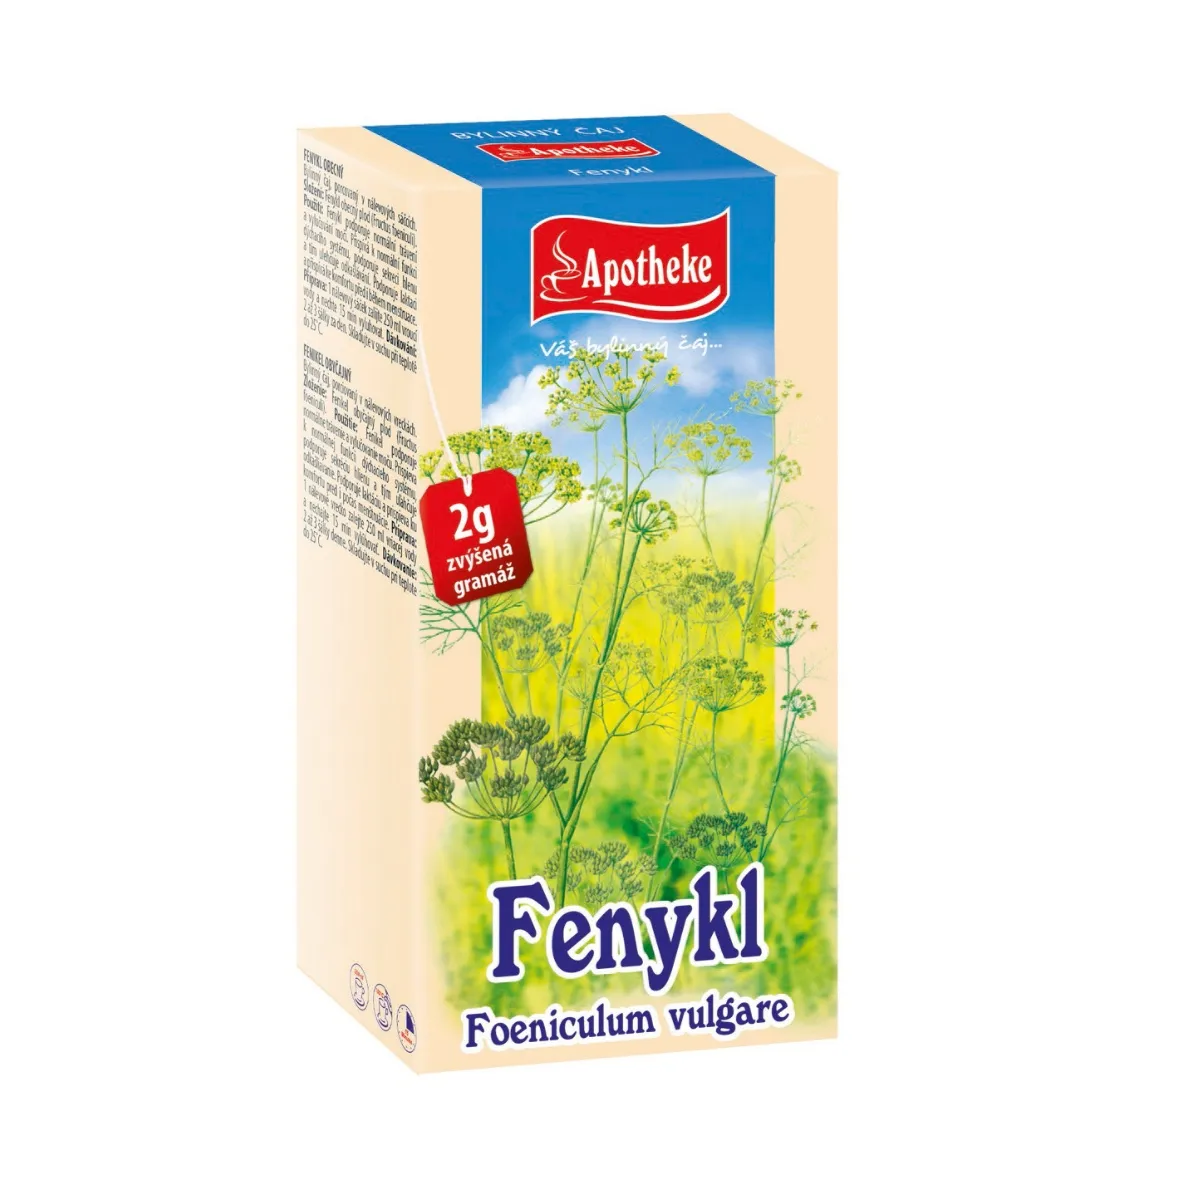 Apotheke Fenykl obecný čaj nálevové sáčky 20x2 g